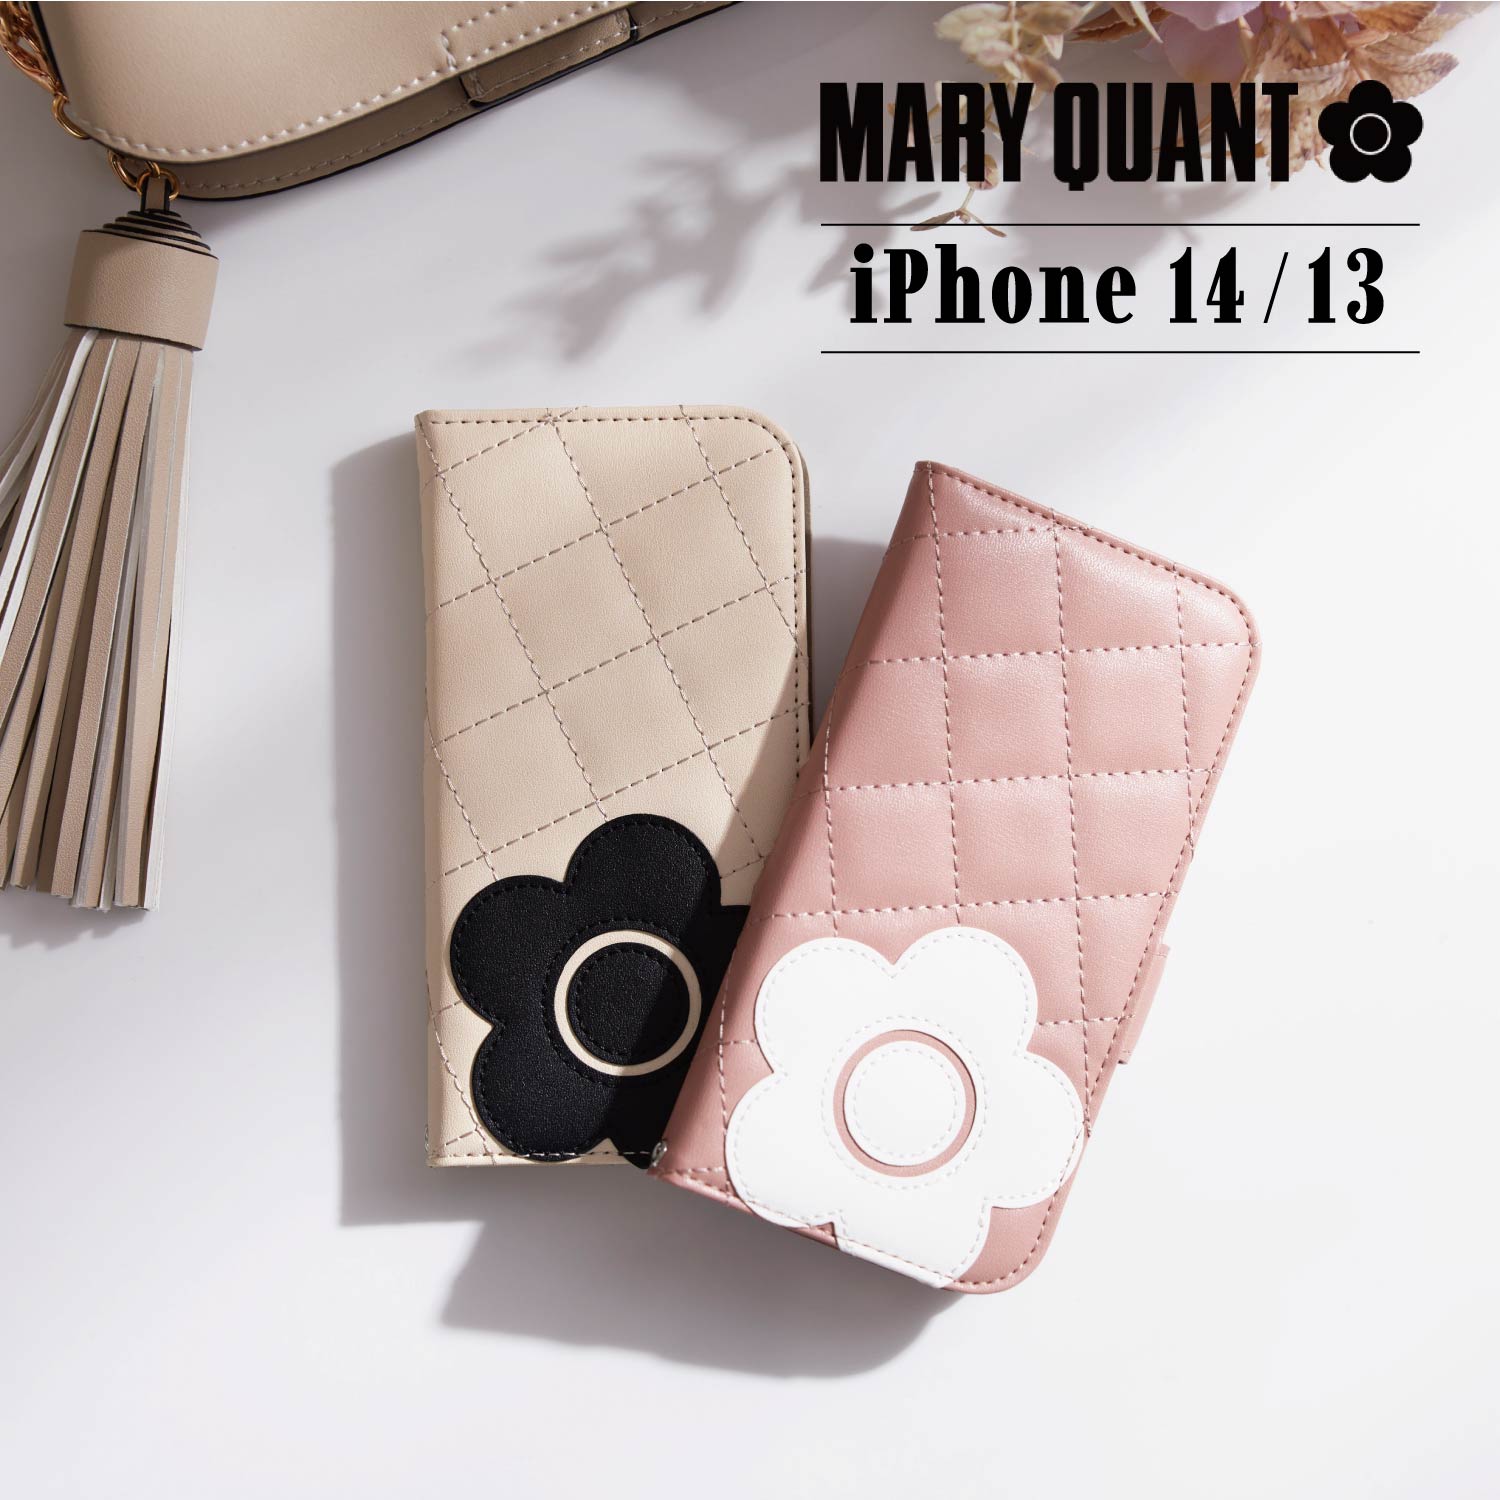 マリークヮント スマホケース レディース マリークヮント MARY QUANT iPhone 14 13 ケース スマホケース 携帯 レディース PU QUILT LEATHER BOOK TYPE CASE ブラック ホワイト グレー ブラウン ピンク 黒 白 母の日